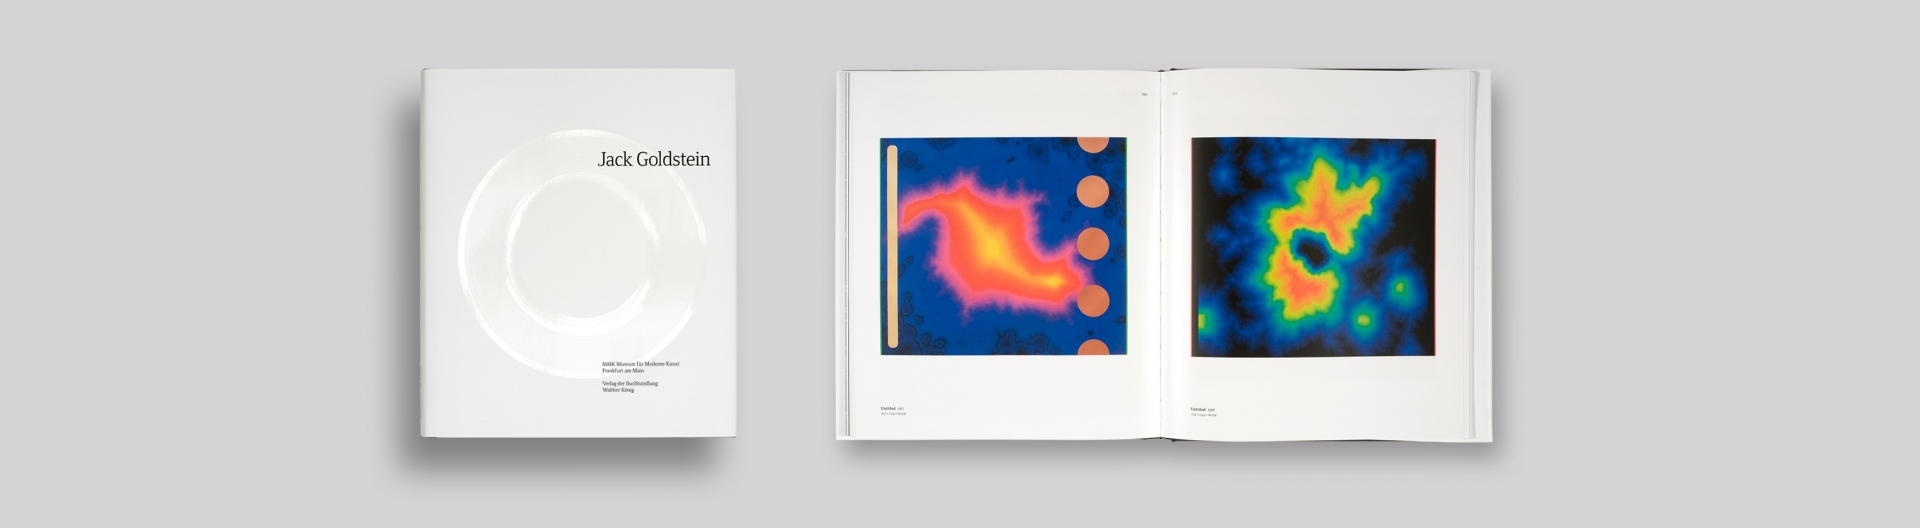 Buchgestaltung - Künstlerkatalog: Jack Goldstein - Museum für Moderne Kunst - Doppelseite und Cover